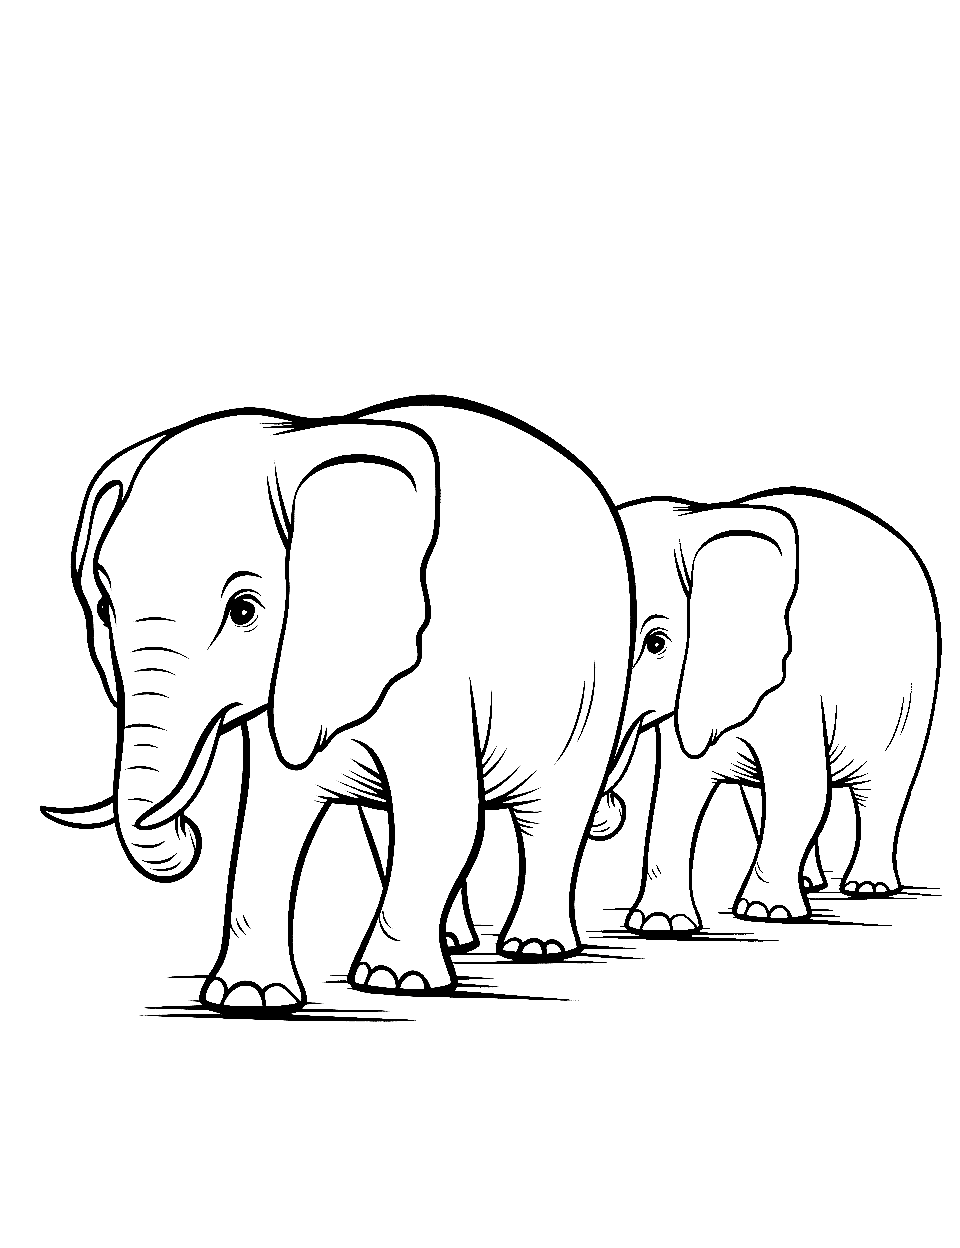 छोटा हाथी सरल ड्राइंग कार्टून तत्व, प्यारा बच्चा हाथी, ड्रम चित्र, कार्टून  PNG चित्र और क्लिपपार्ट मुफ्त डाउनलोड के लिए